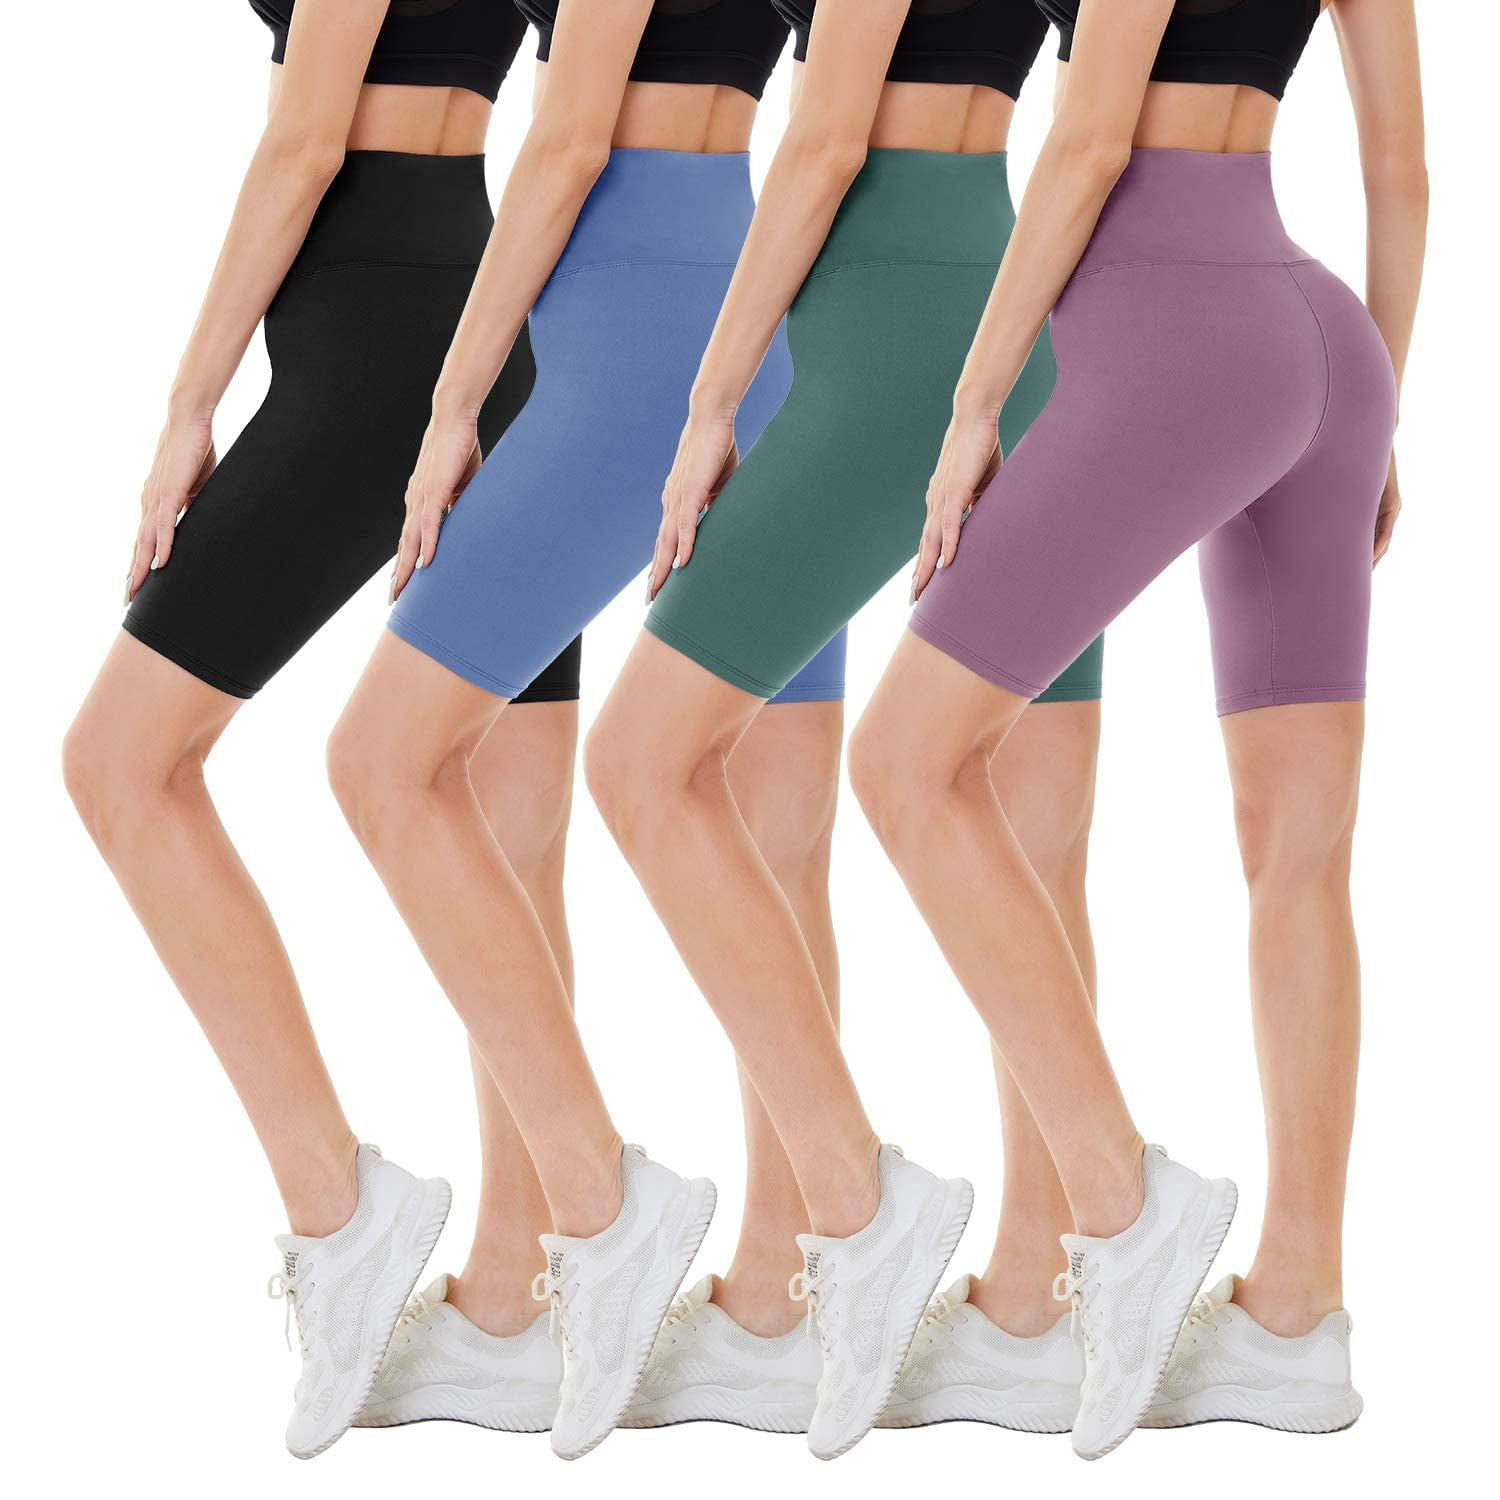 CAMPSNAIL 4 Pack Biker Shorts for Women – 8 High Waist Tummy